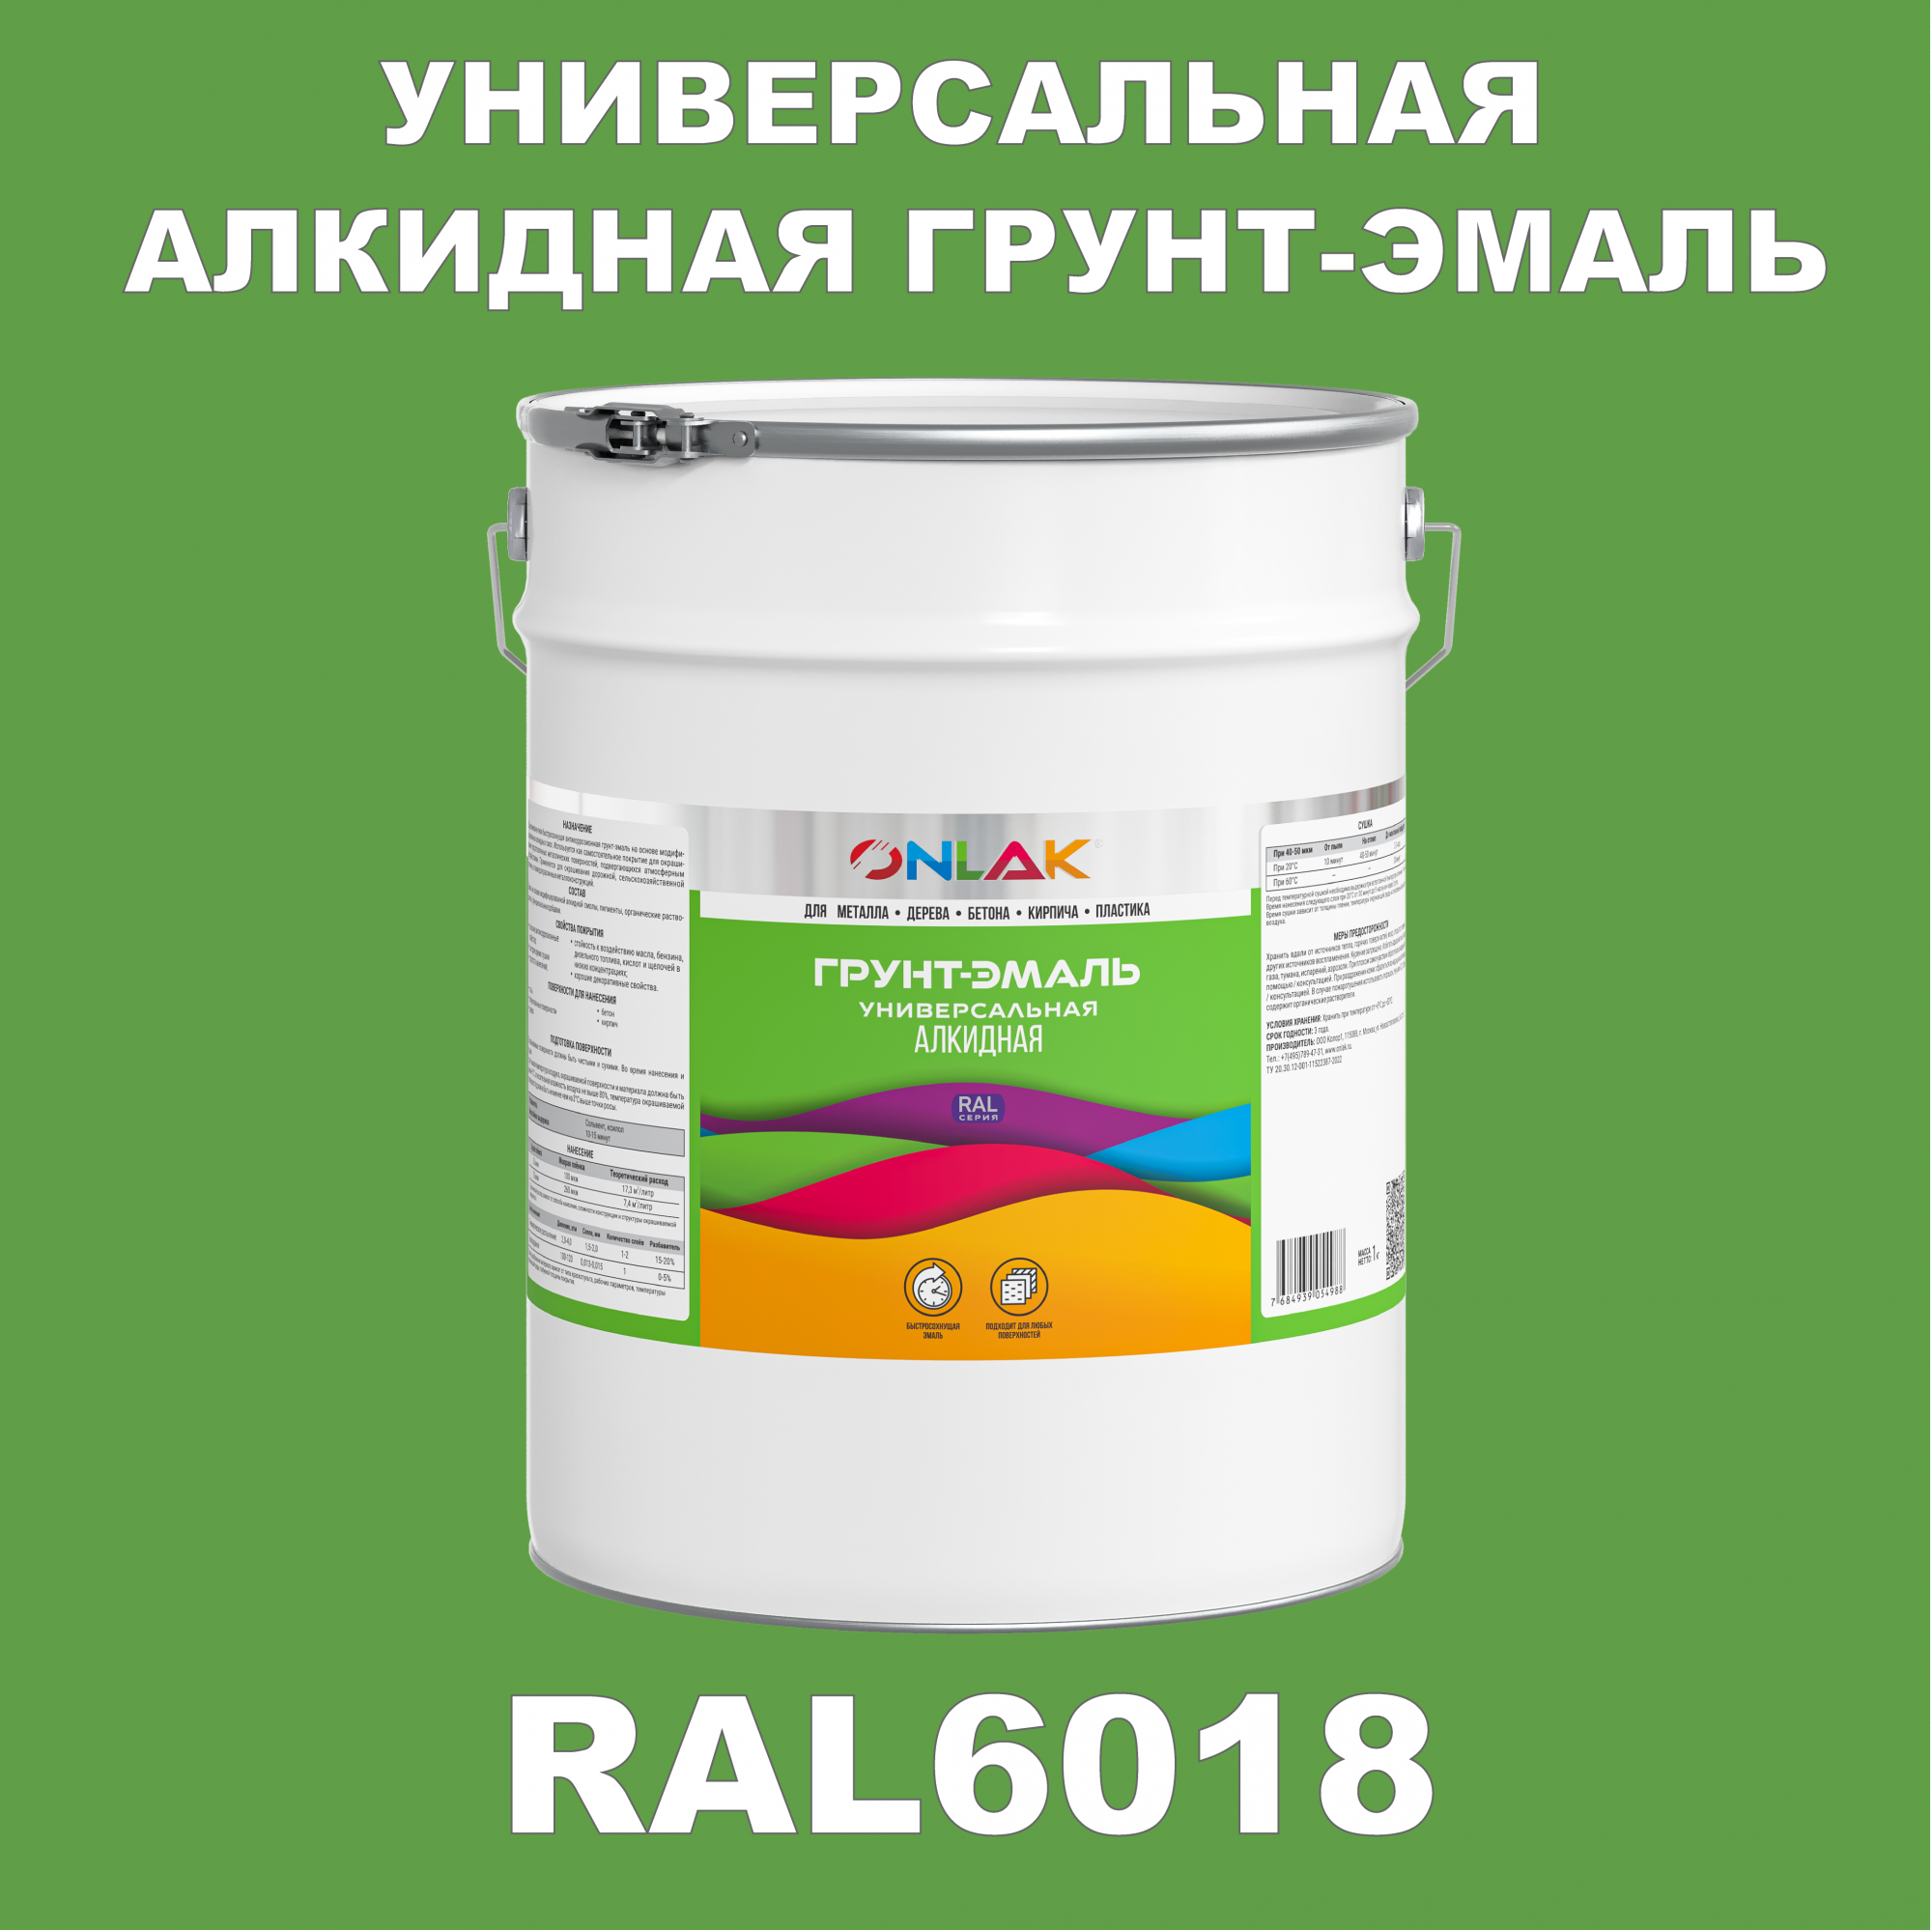 Грунт-эмаль ONLAK 1К RAL6018 антикоррозионная алкидная по металлу по ржавчине 20 кг грунт эмаль престиж по ржавчине алкидная зеленая 1 9 кг